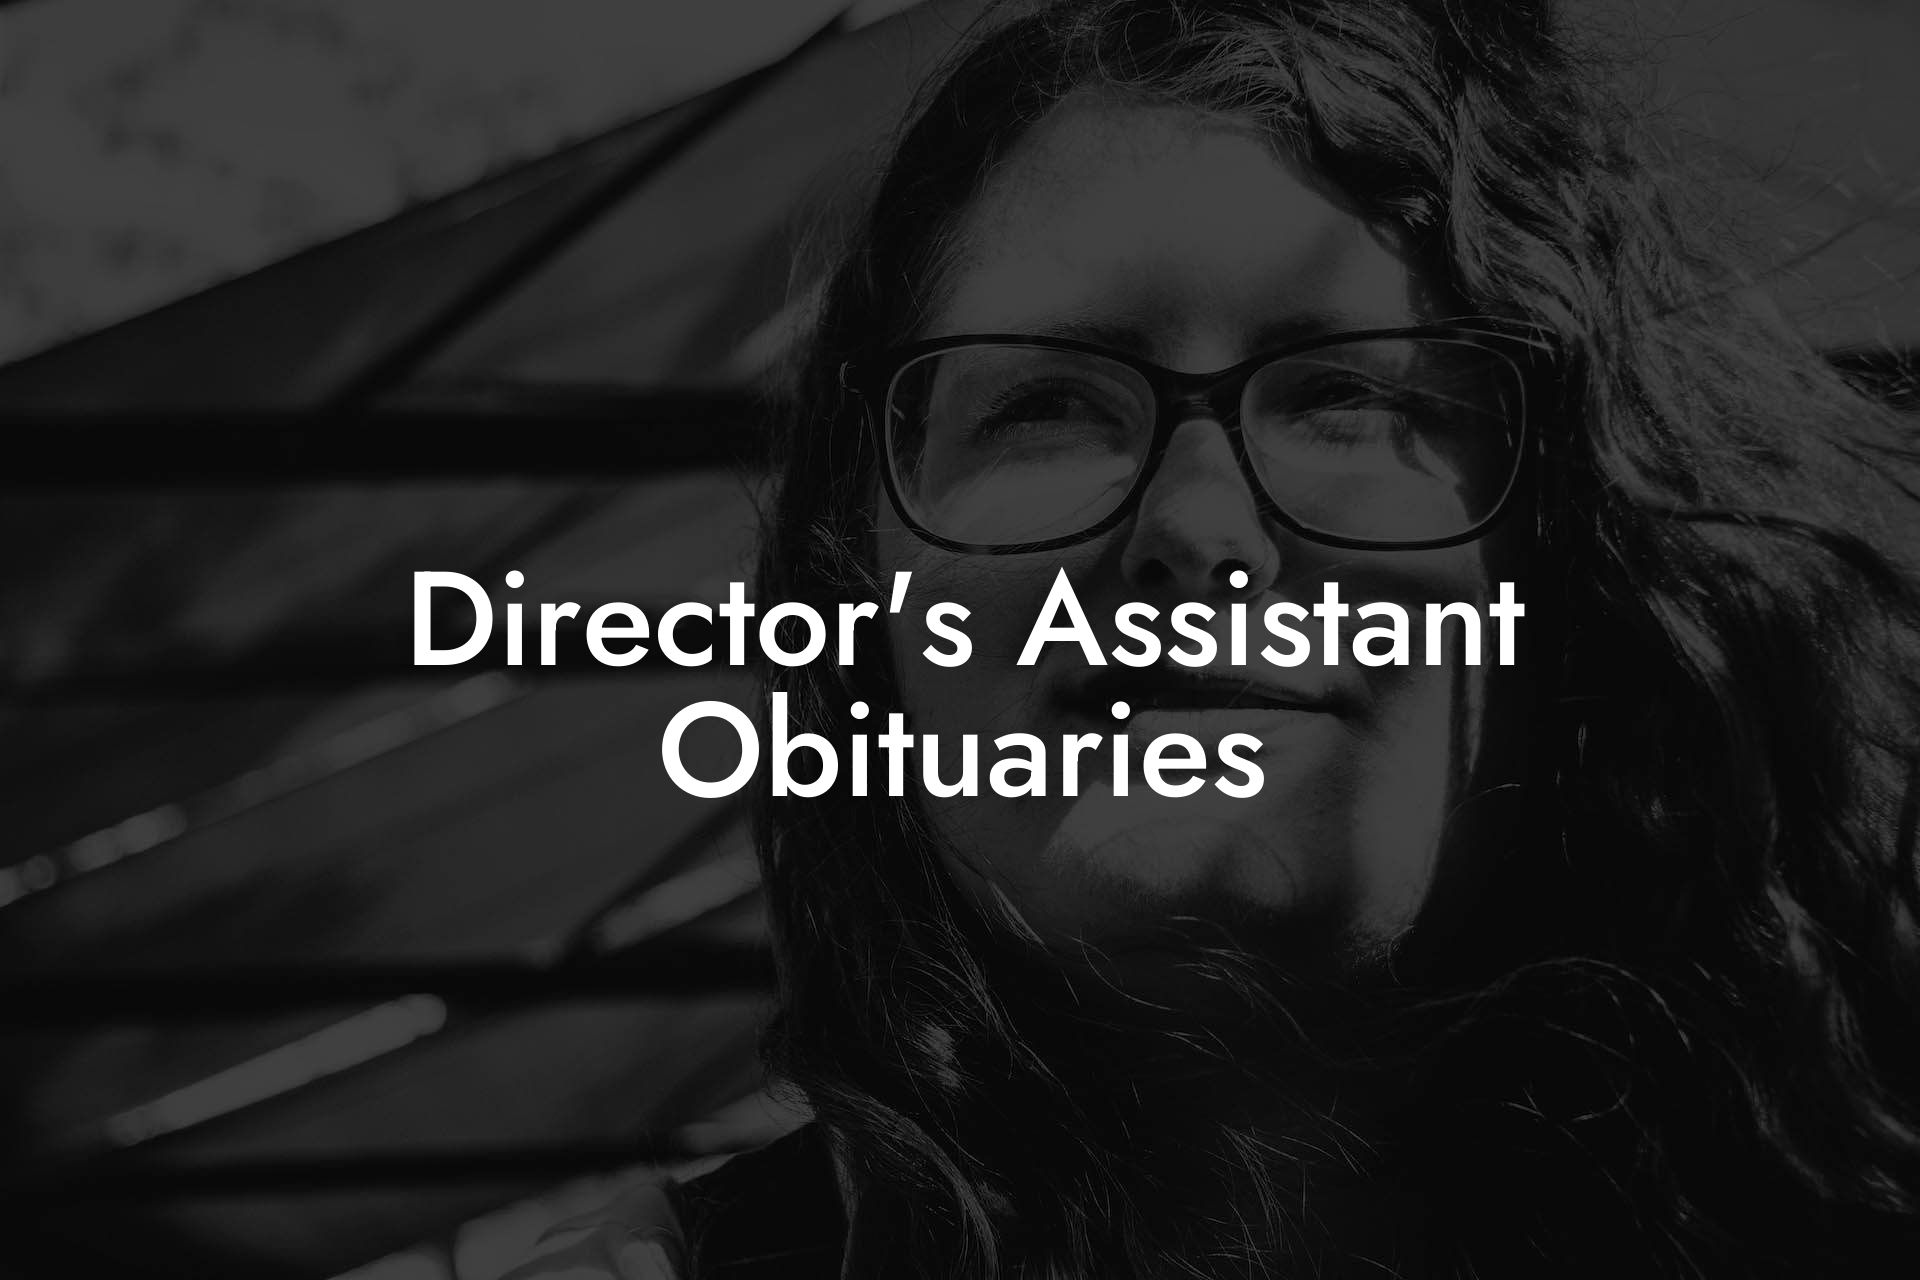 Director's Assistant Obituaries